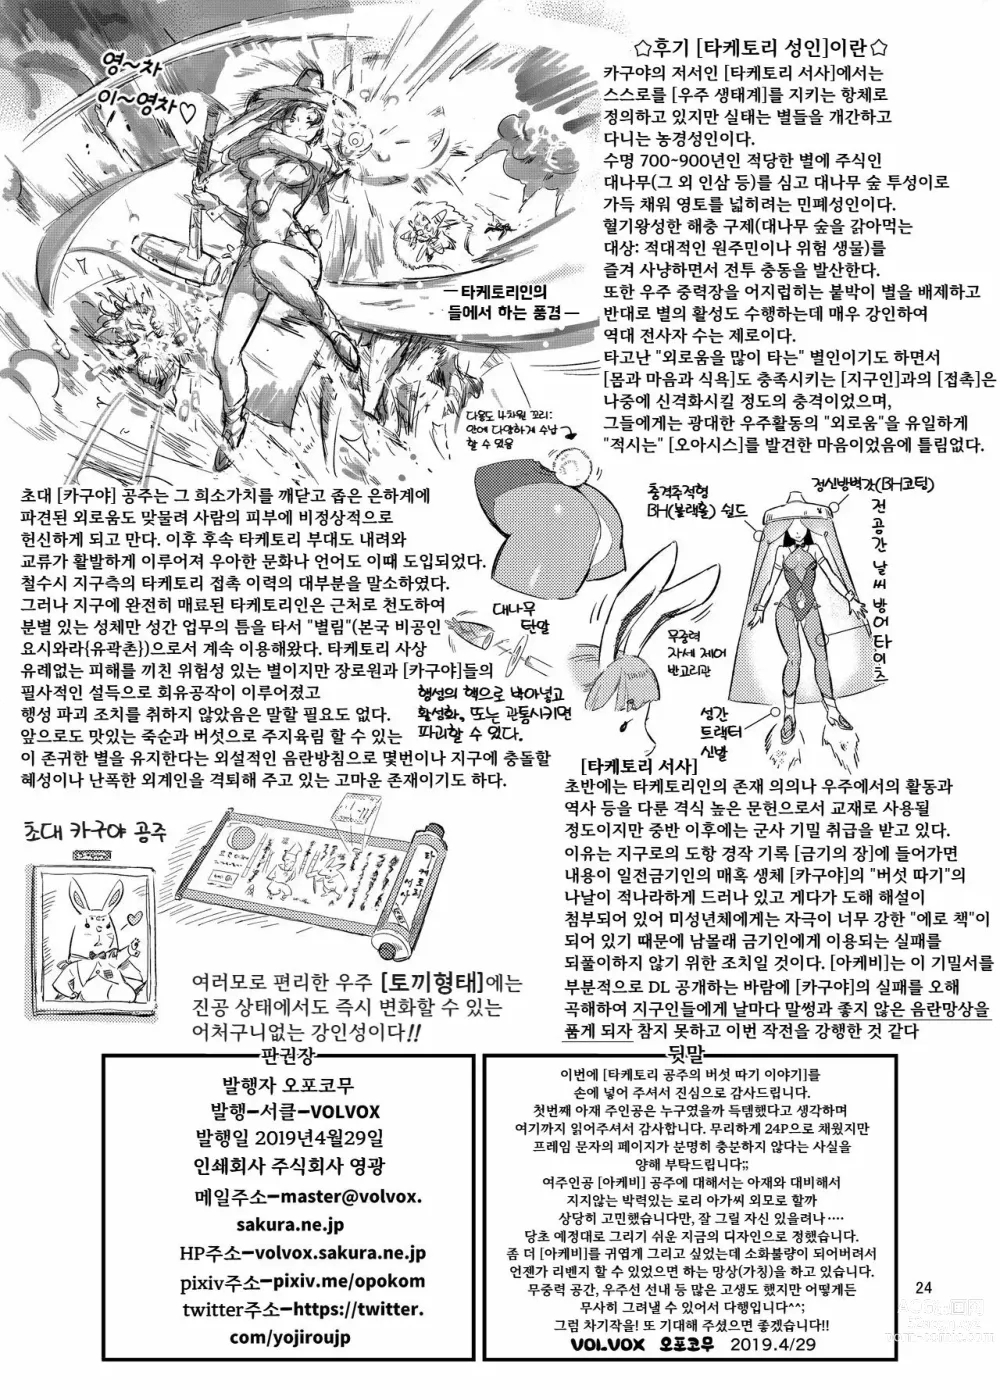 Page 24 of doujinshi 타케토리 공주의 버섯 따기 이야기